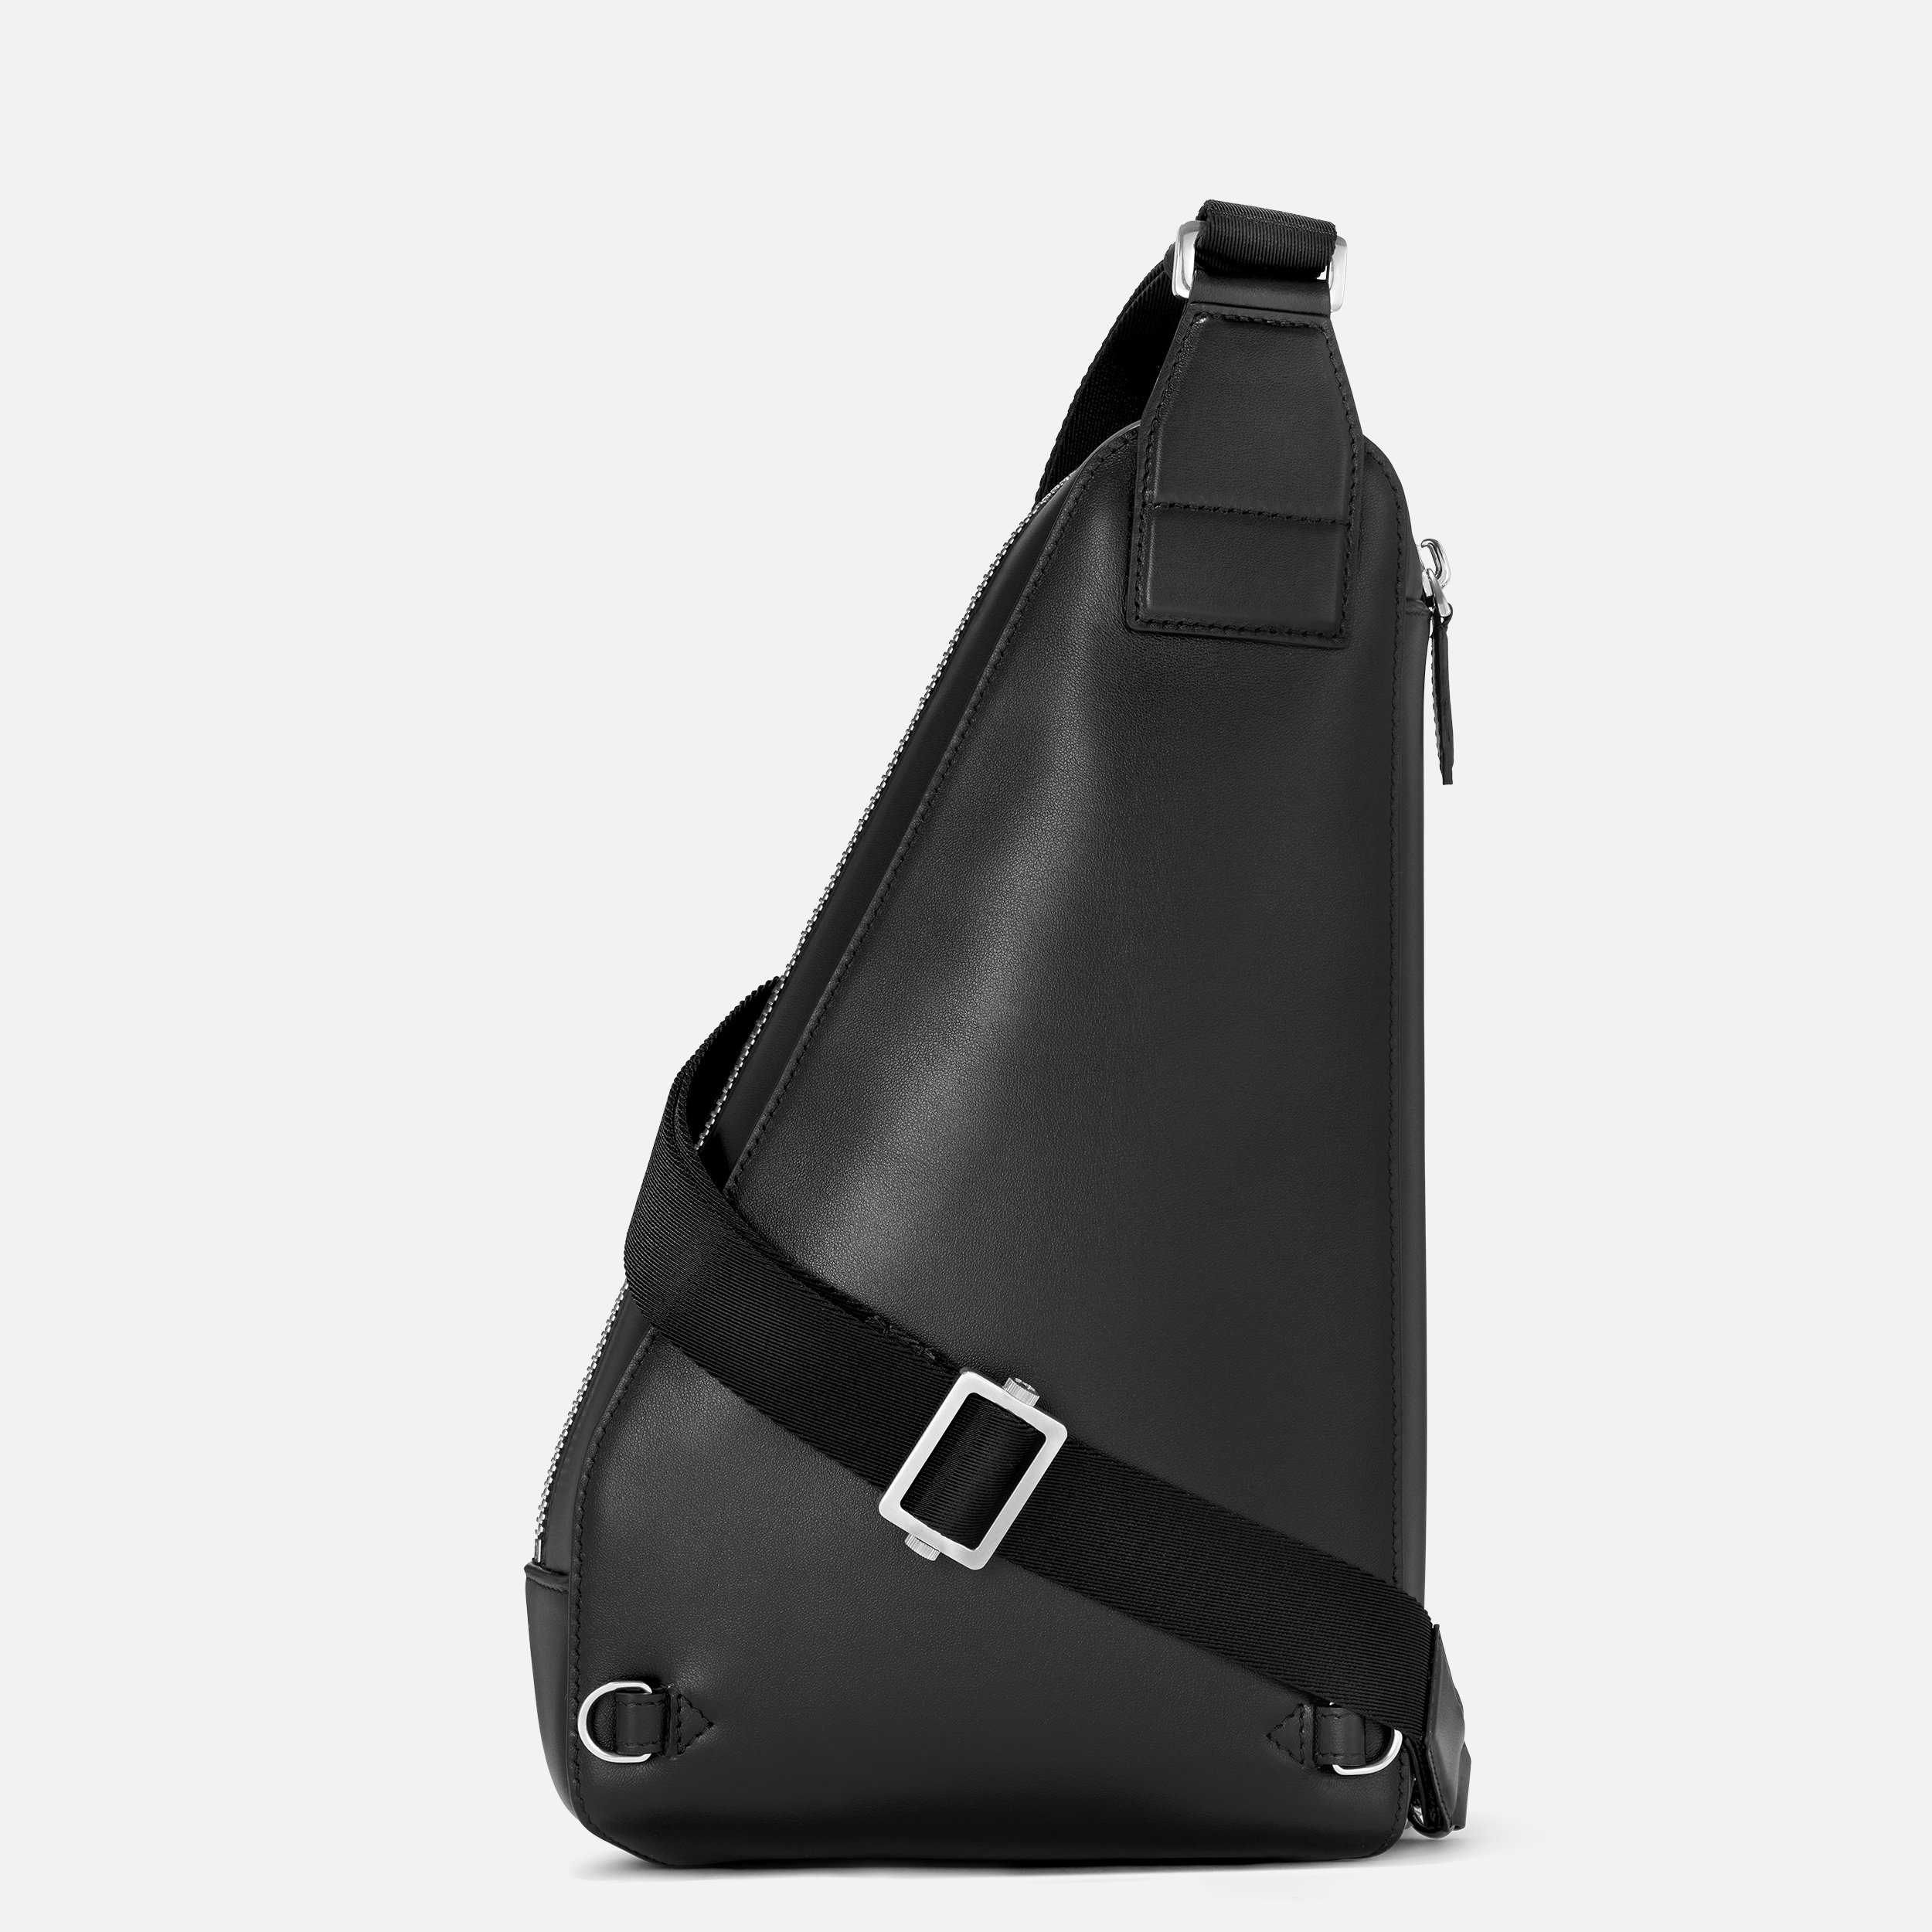 Soft sling bag - 5